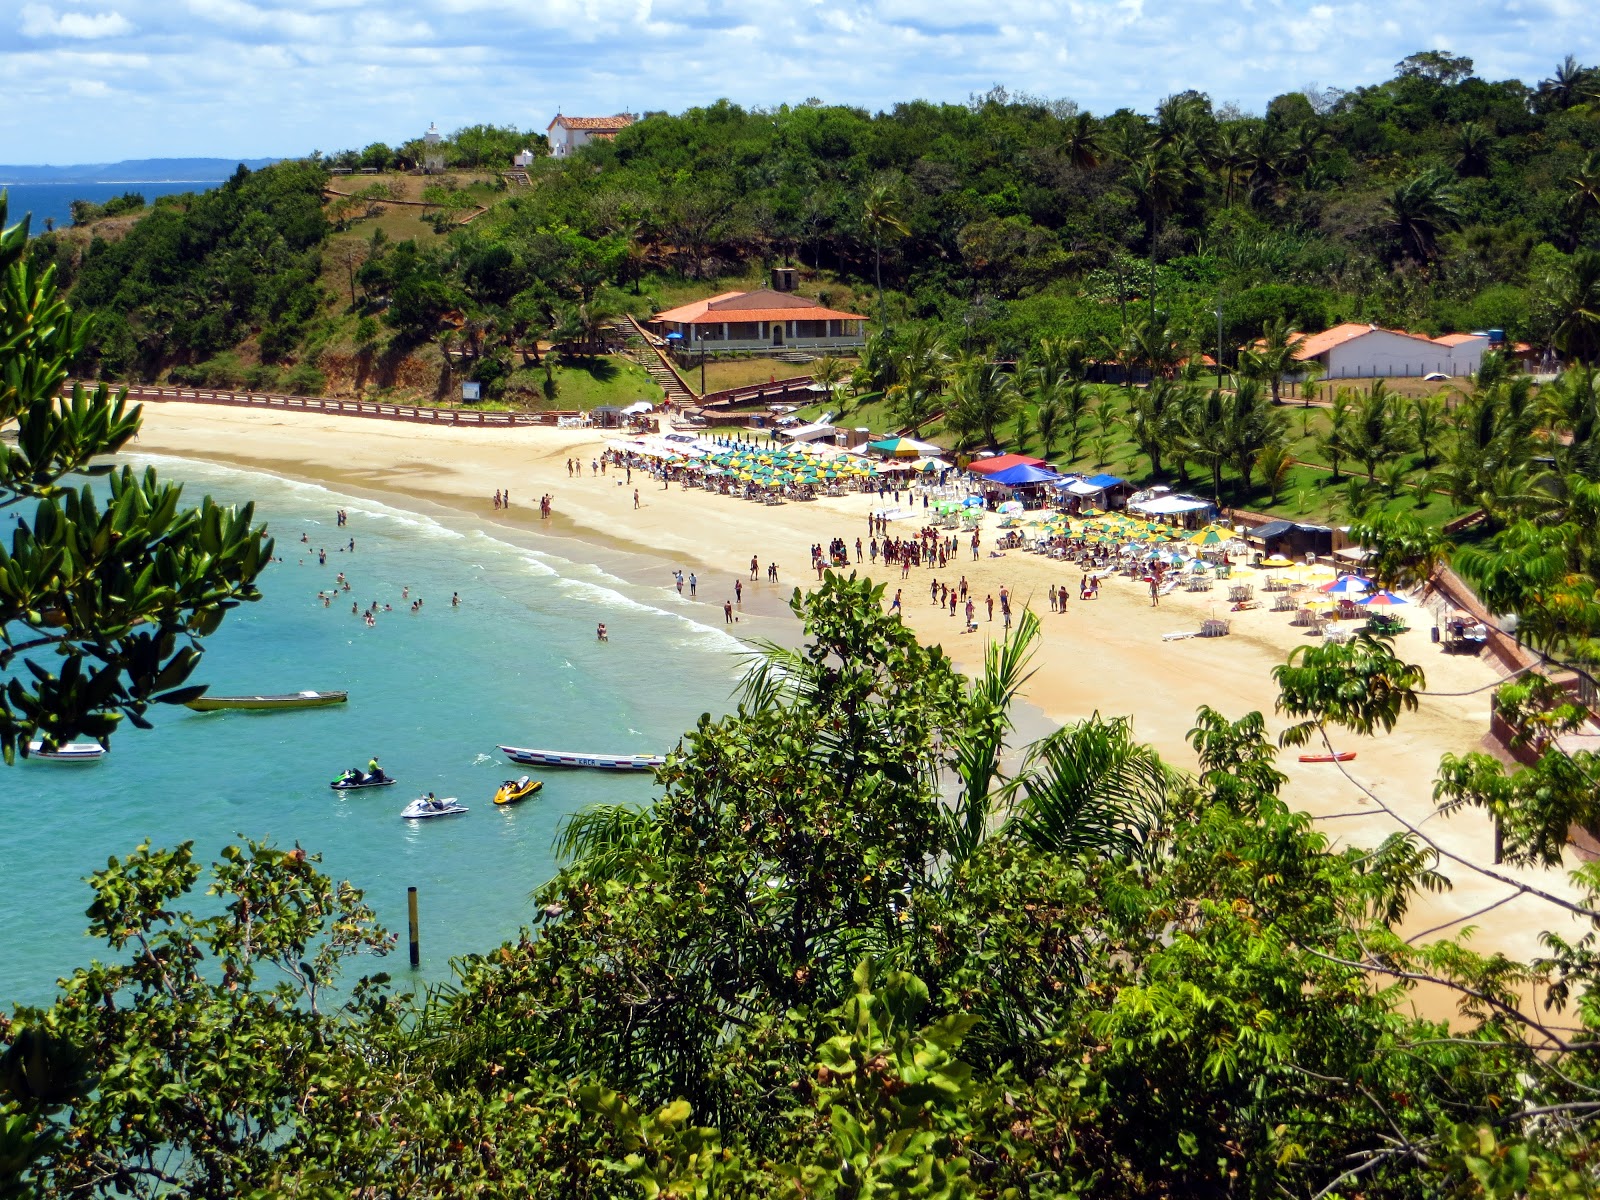 Praia de Nossa'in fotoğrafı - rahatlamayı sevenler arasında popüler bir yer